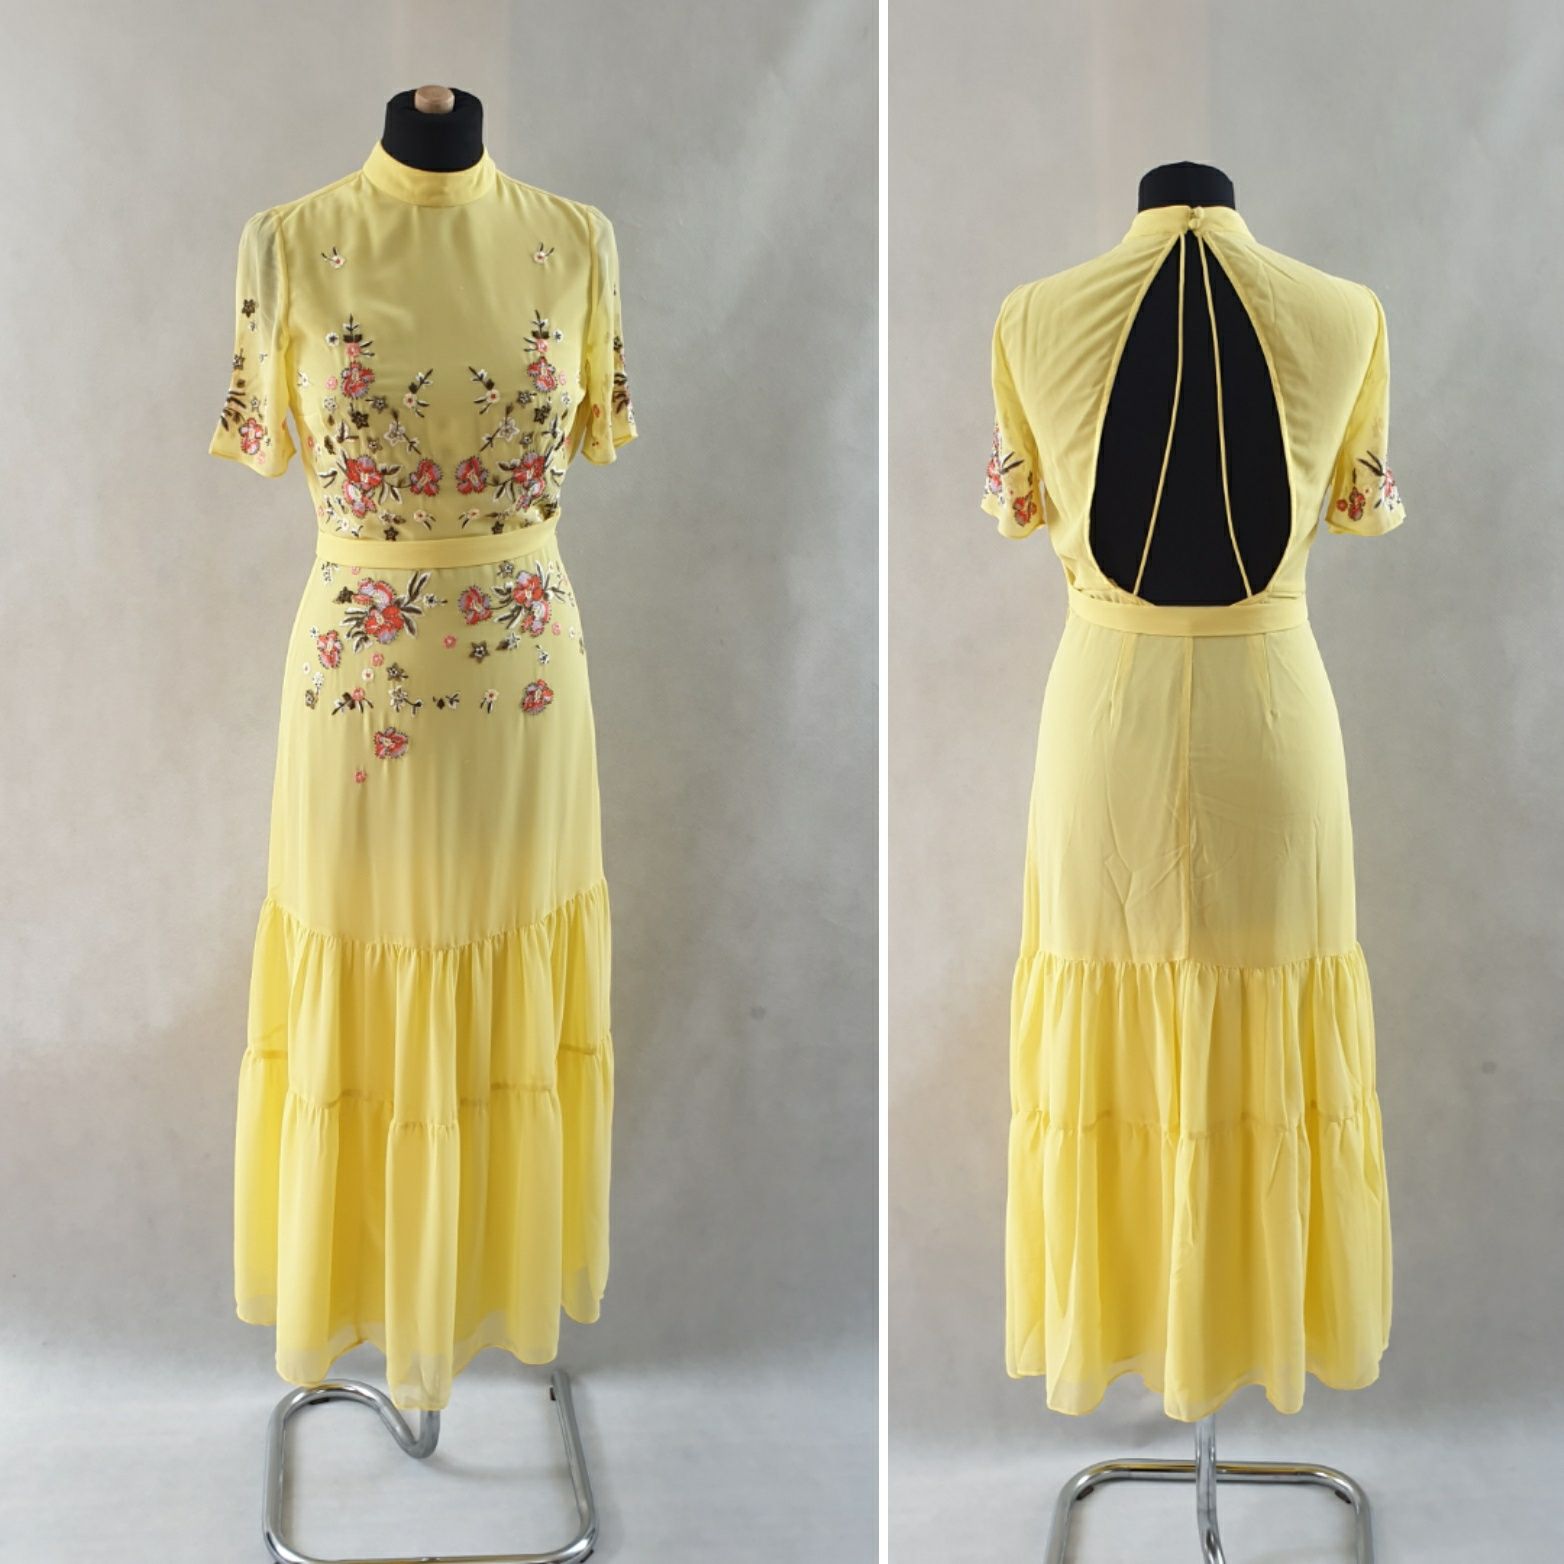 Żółta letnia boho sukienka ze zwiewnego materiału. Odkryte pl